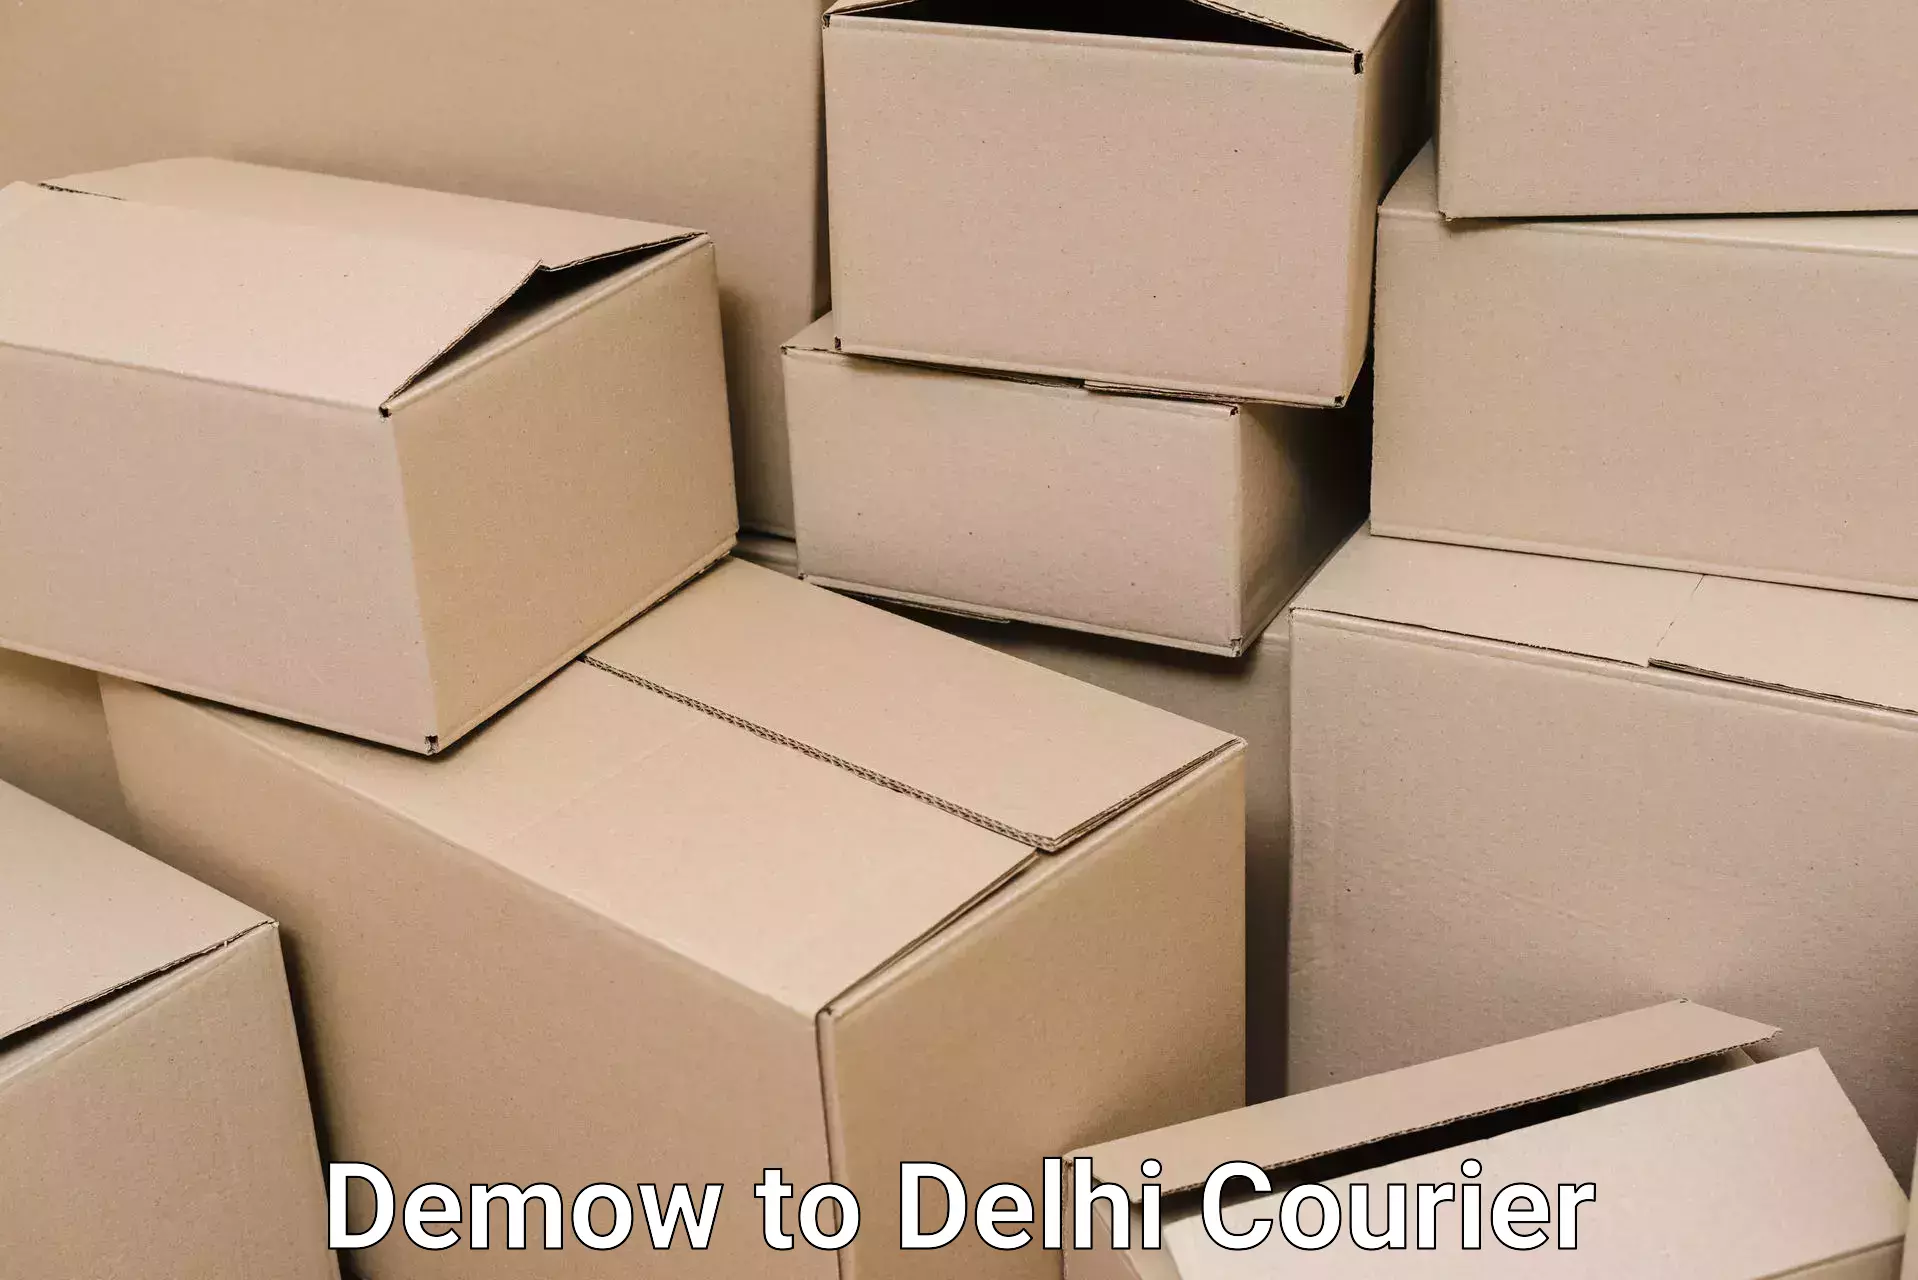 Furniture delivery service Demow to Delhi